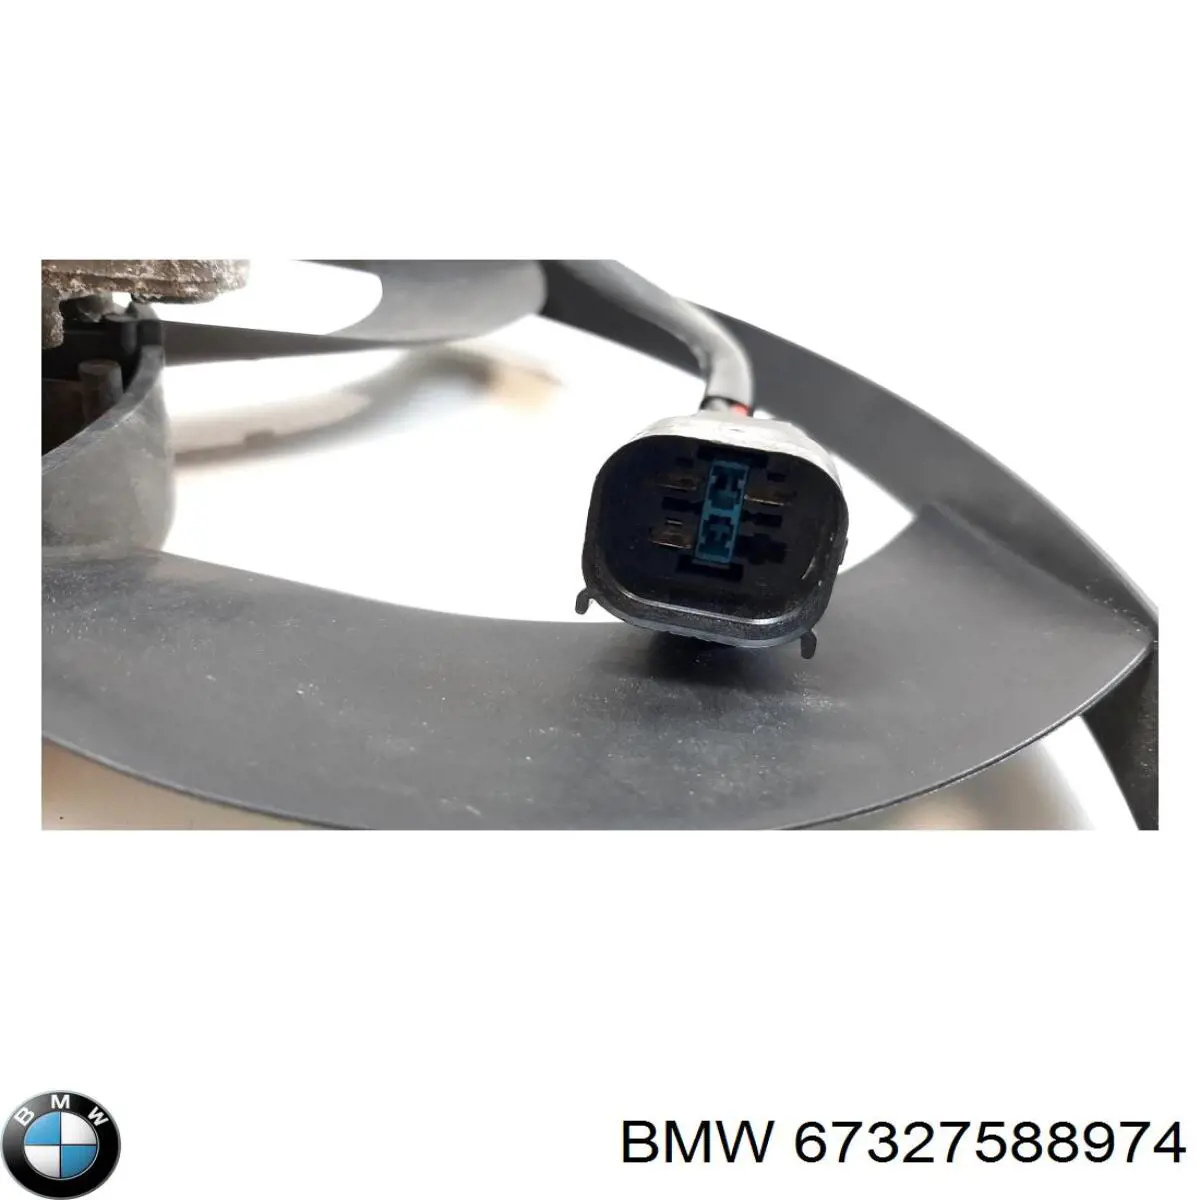 Difusor de radiador, ventilador de refrigeración, condensador del aire acondicionado, completo con motor y rodete para BMW X1 (E84)